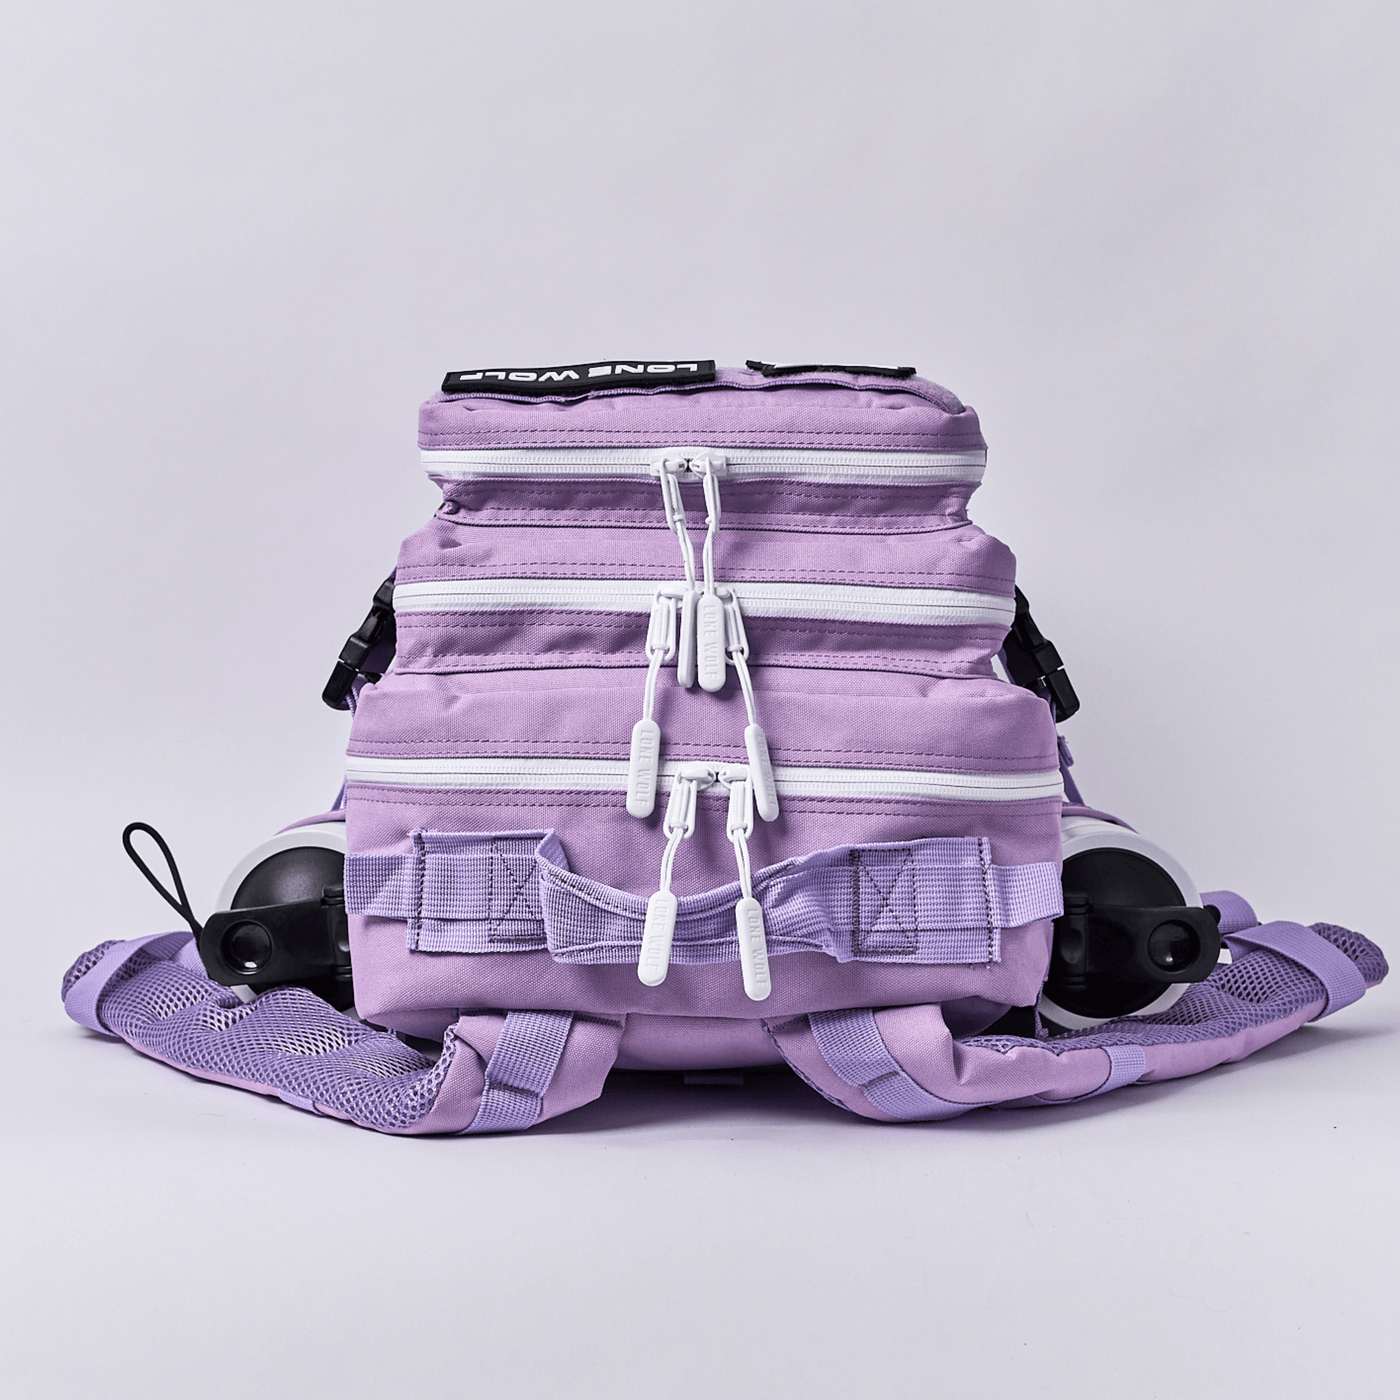 Gen 3 Lavender 35L Backpack